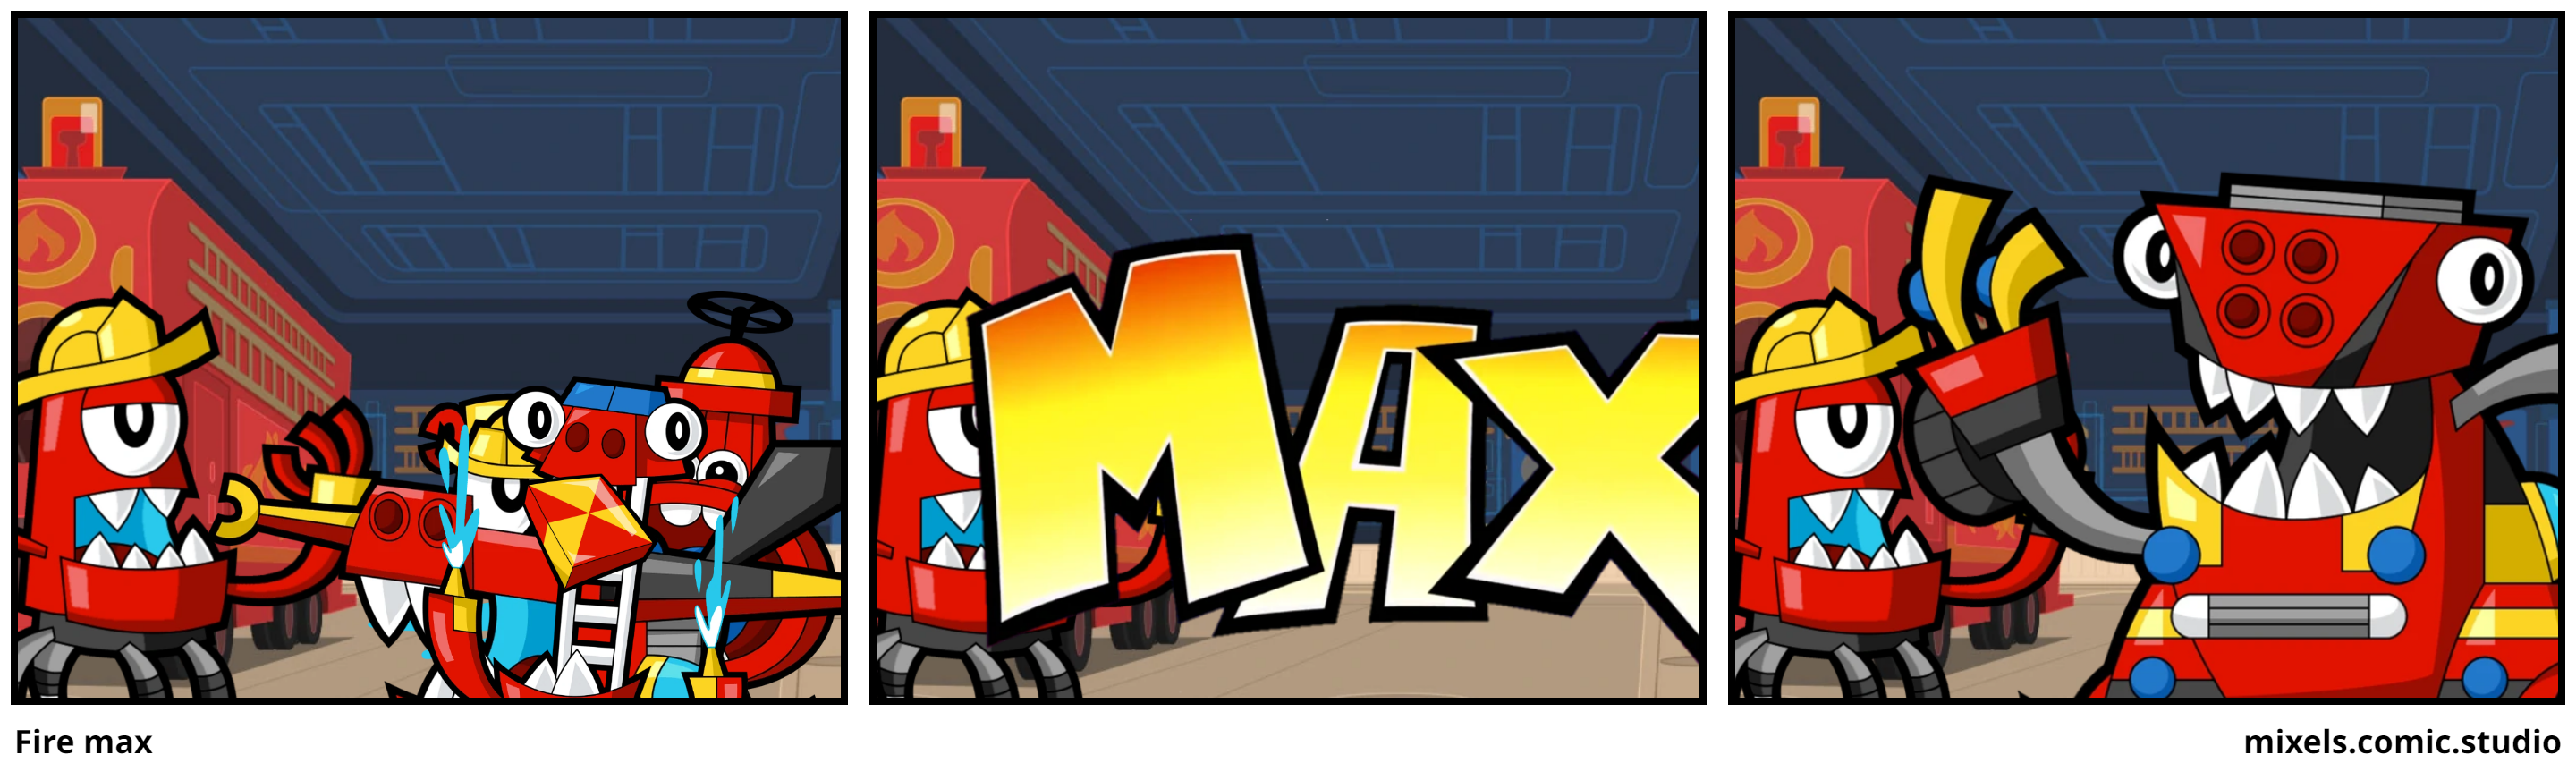 Fire max